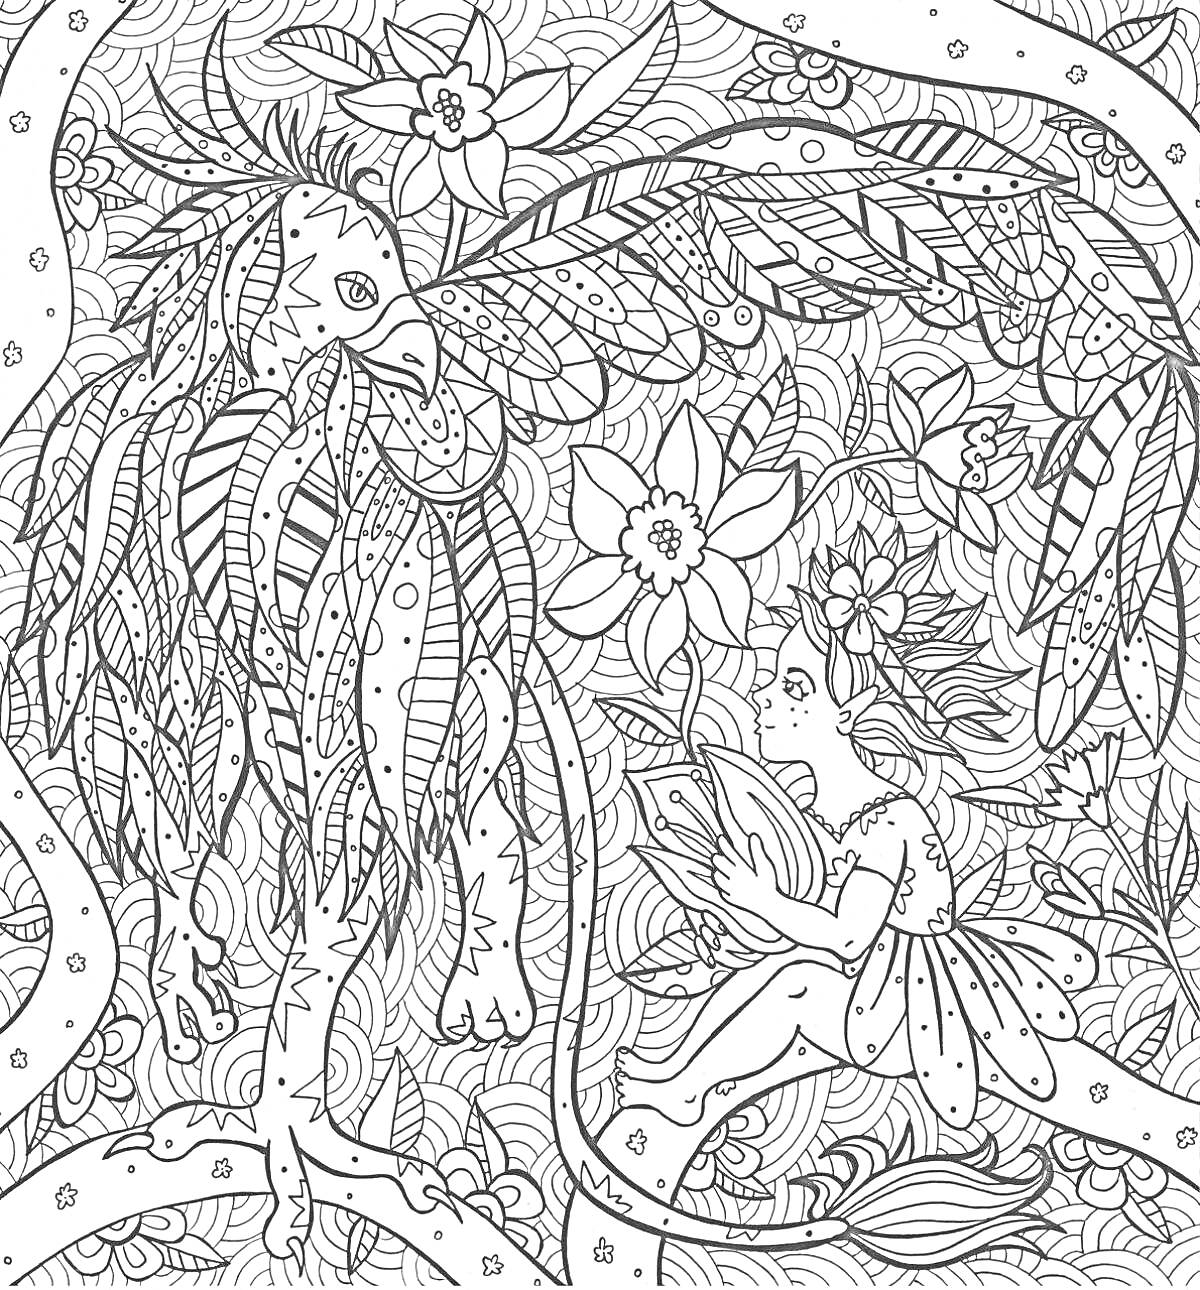 РаскраскаФея и птица в лесу с цветами и листьями